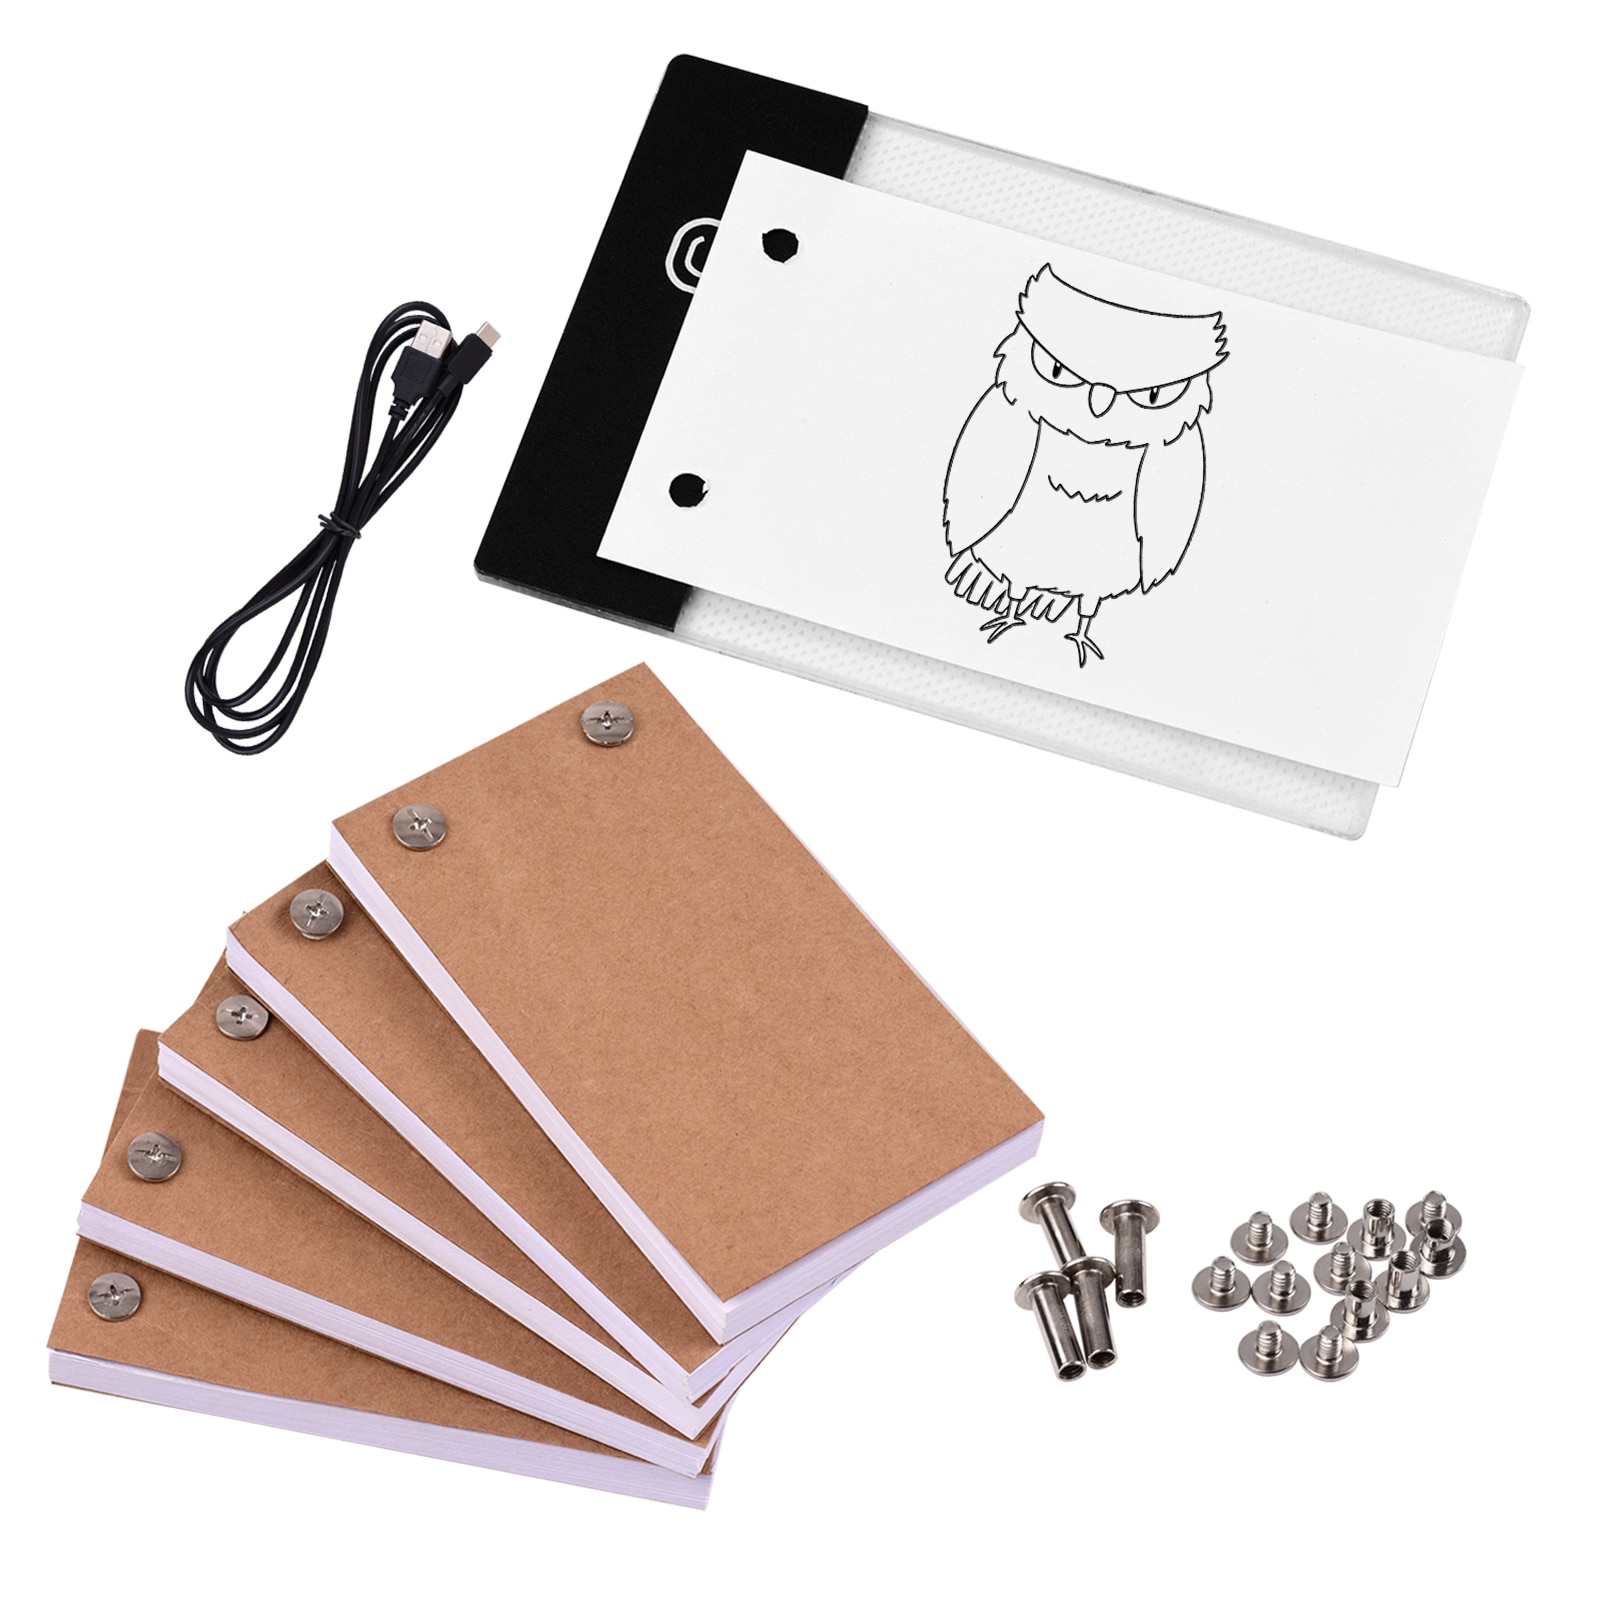 Tekening Papier Flipbook Flip Boek Kit Met Licht Pad Led Licht Box Tablet 300 Vellen Met Binding Schroeven Voor Schetsen creatie